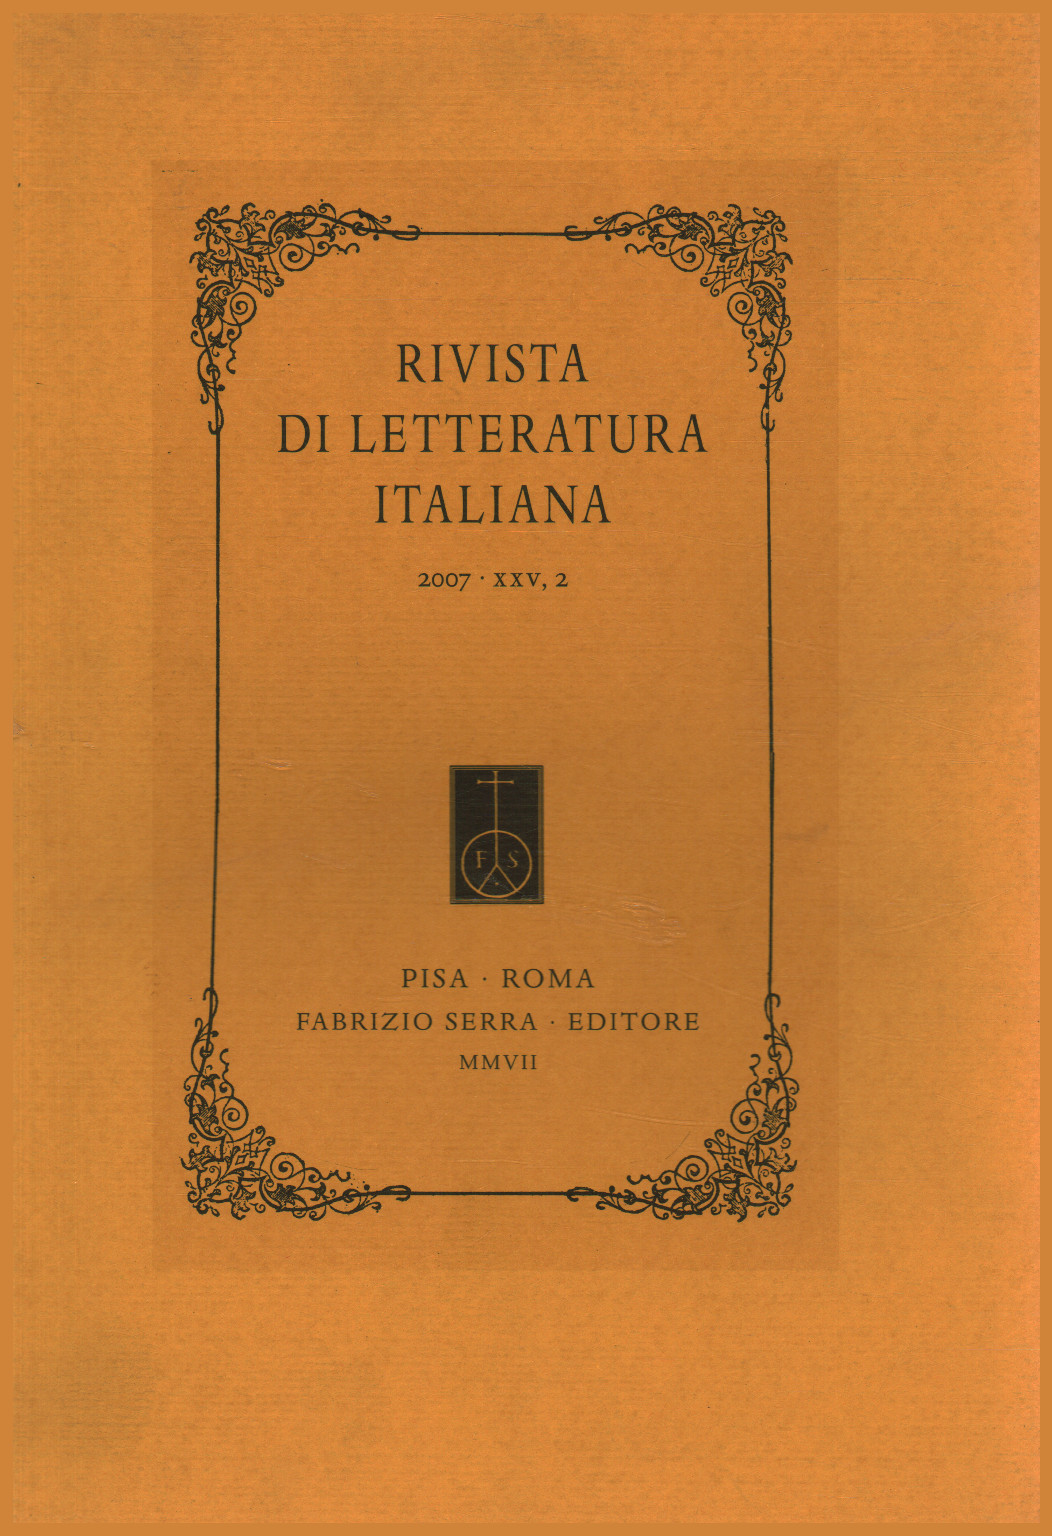 Rivista di letteratura italiana 2007,XXV,2, s.a.